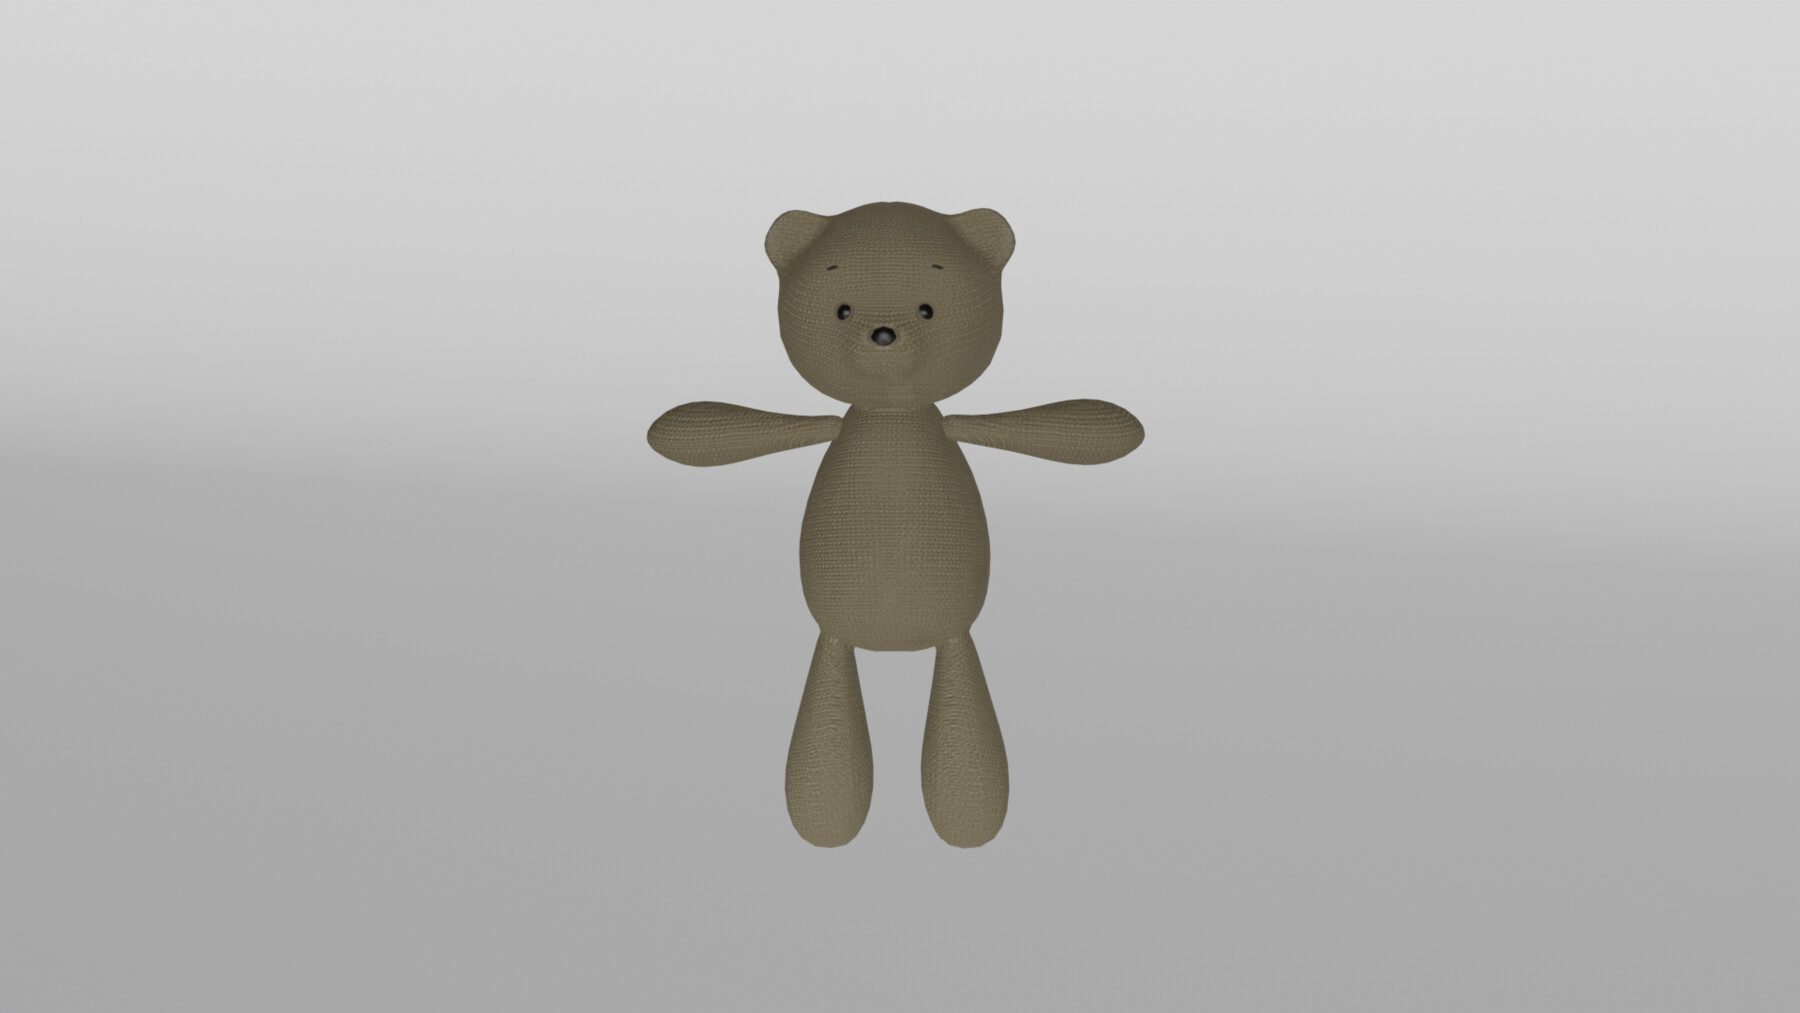 Teddy Bear Blender Models for Download